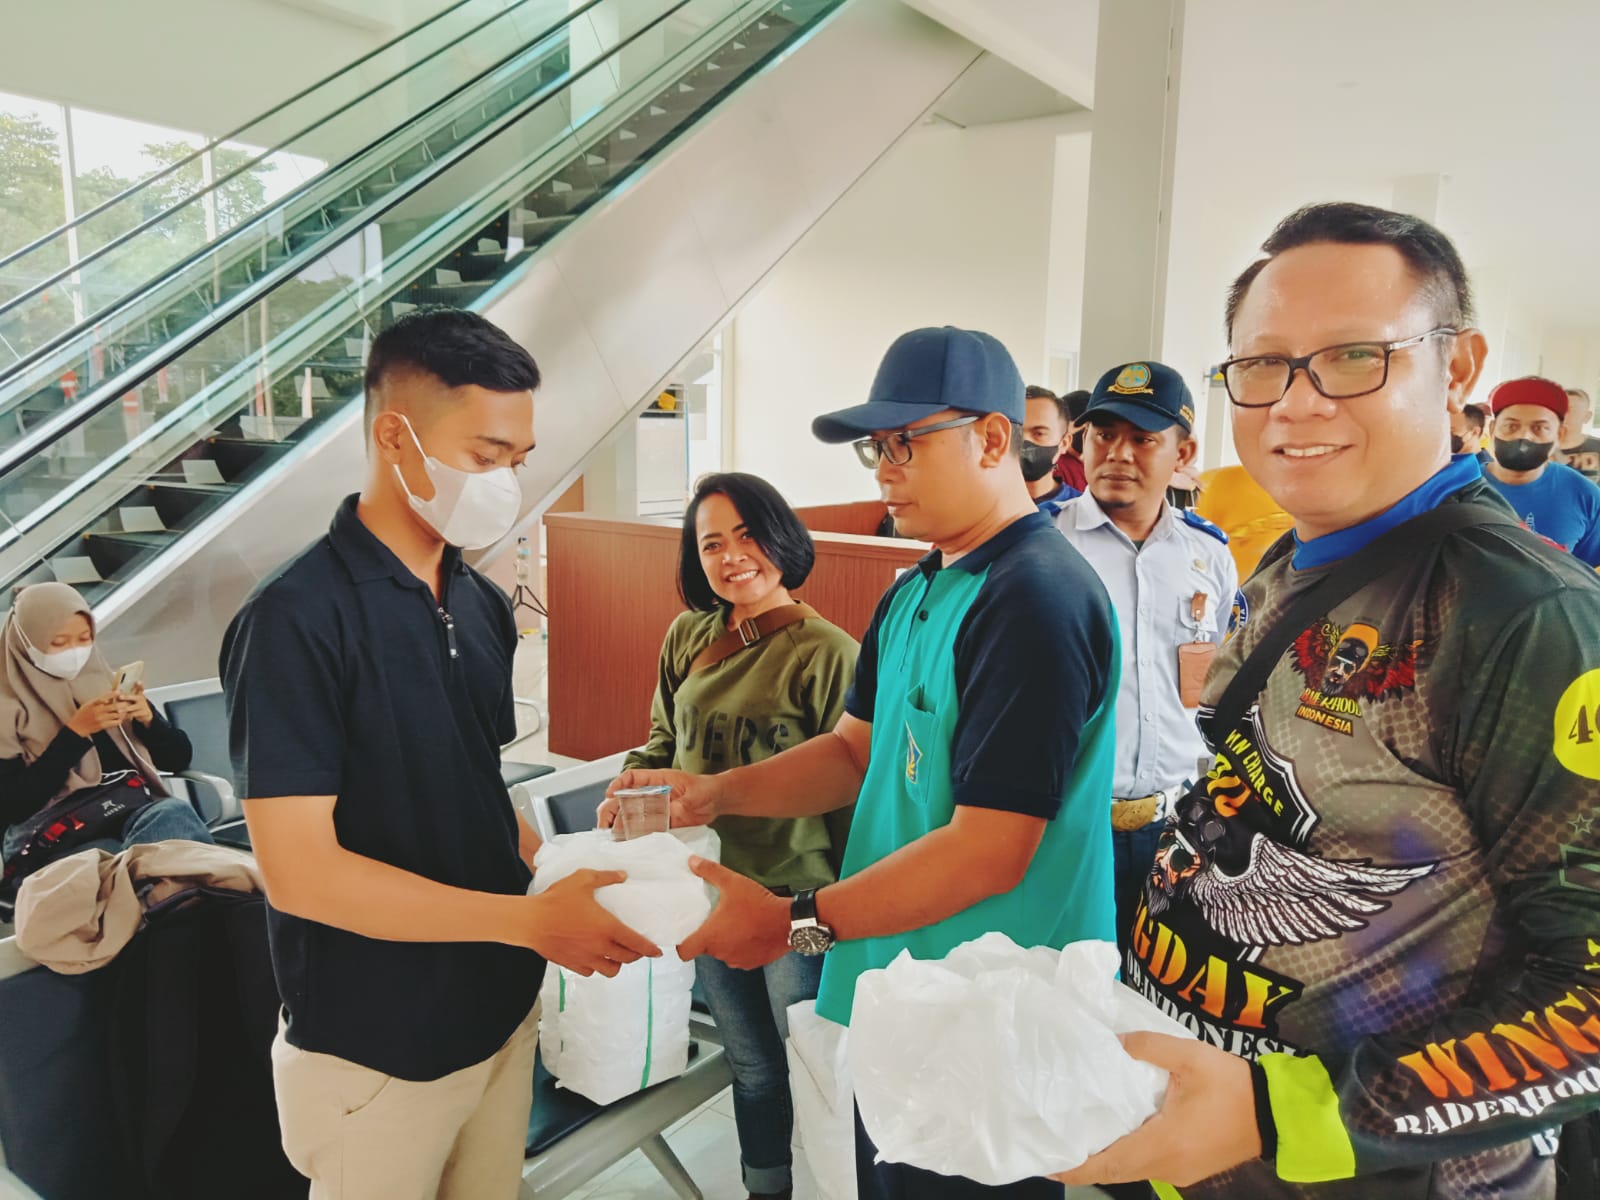 Baderhood TKP Bagi Takjil di Terminal Harjamukti Cirebon, Inilah Pesan yang Ingin Disampaikan